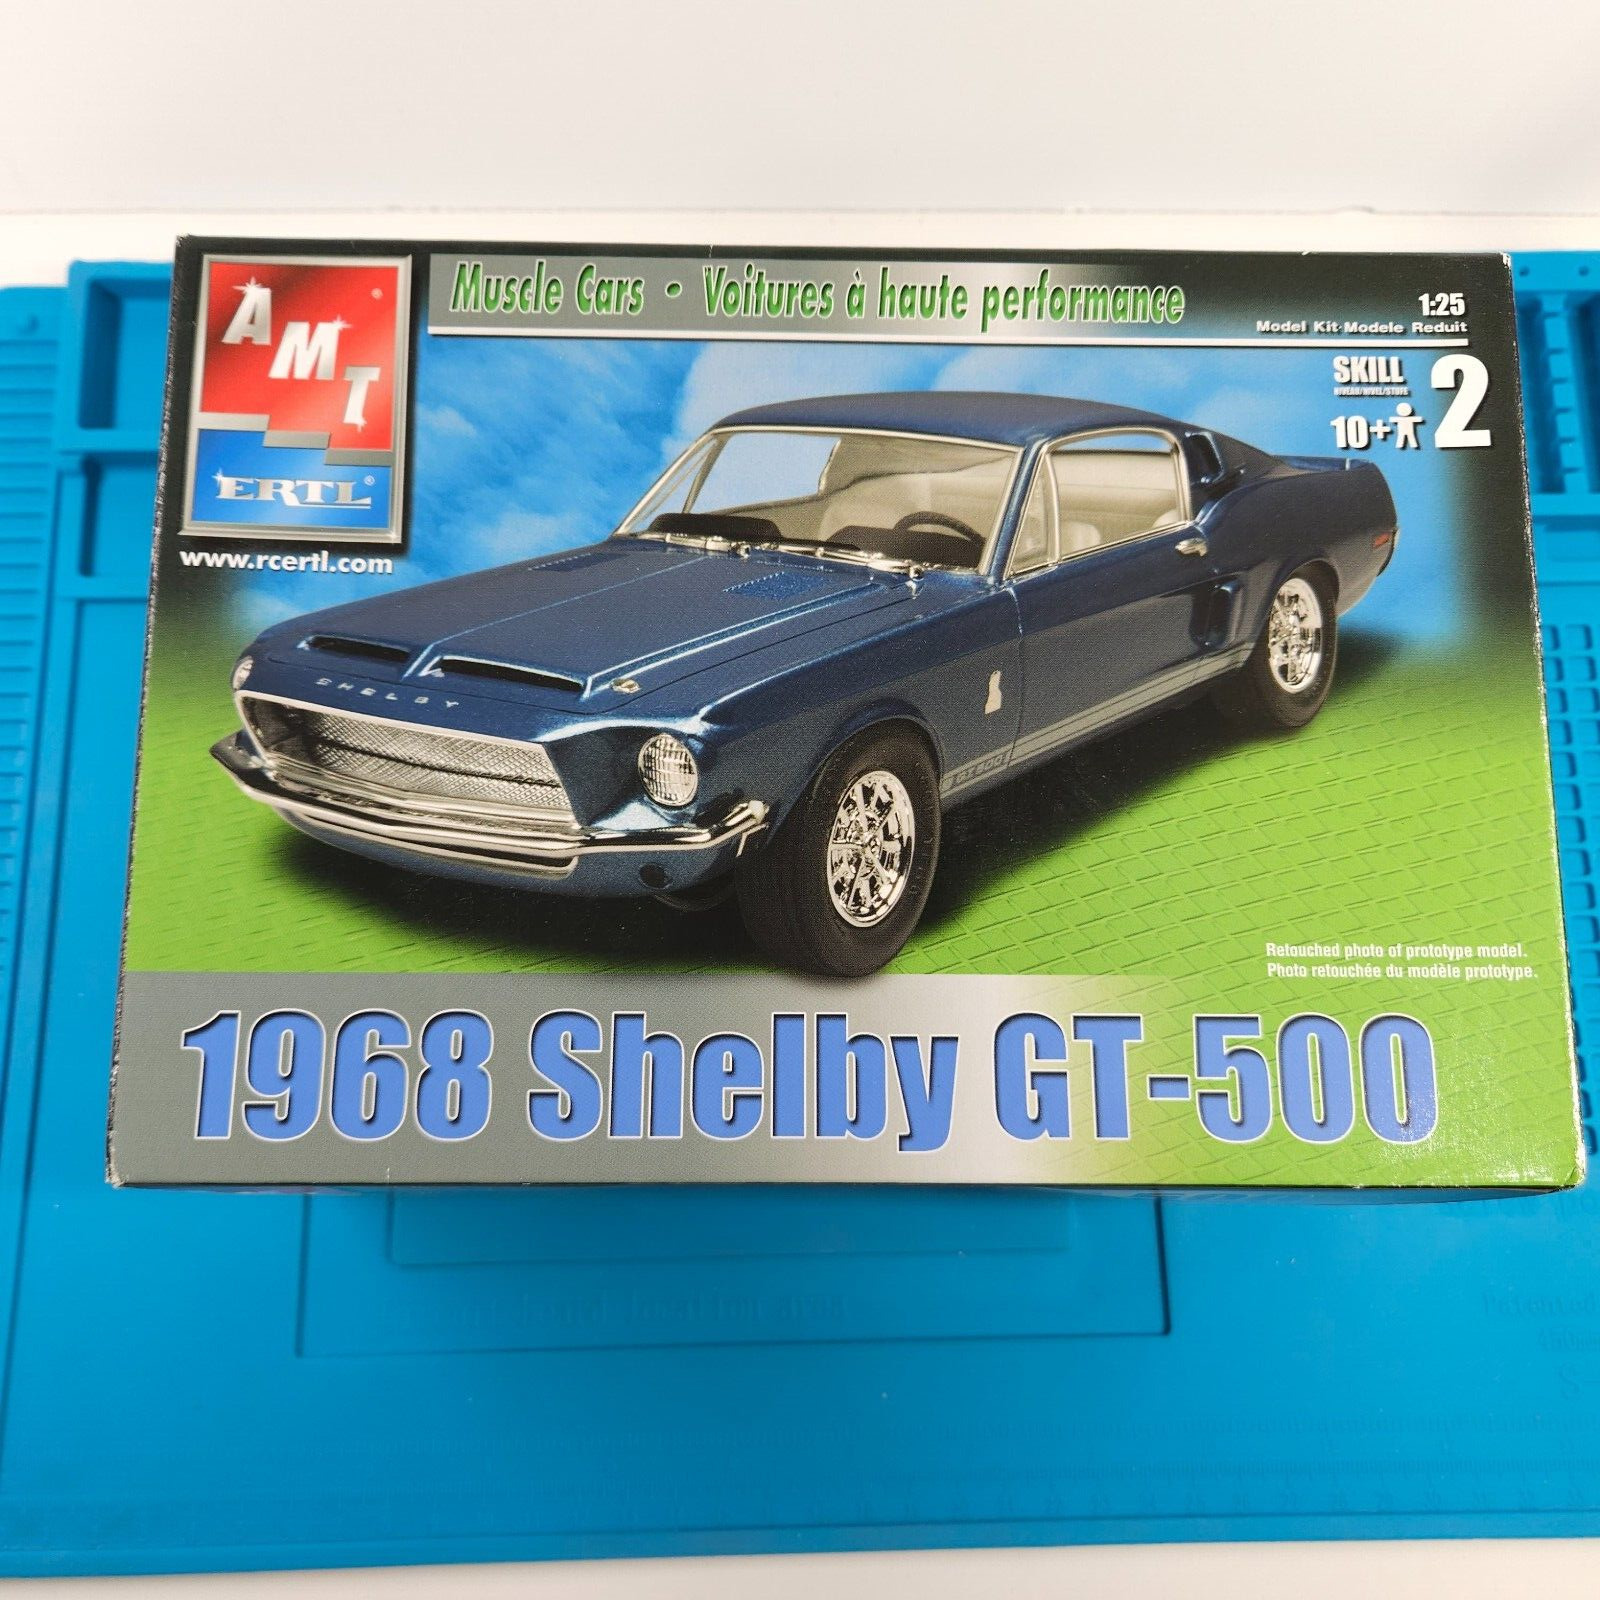 AMT ERTL 1968 Shelby GT-500 1/25 Scale Model Kit #31766 Open Box 2004